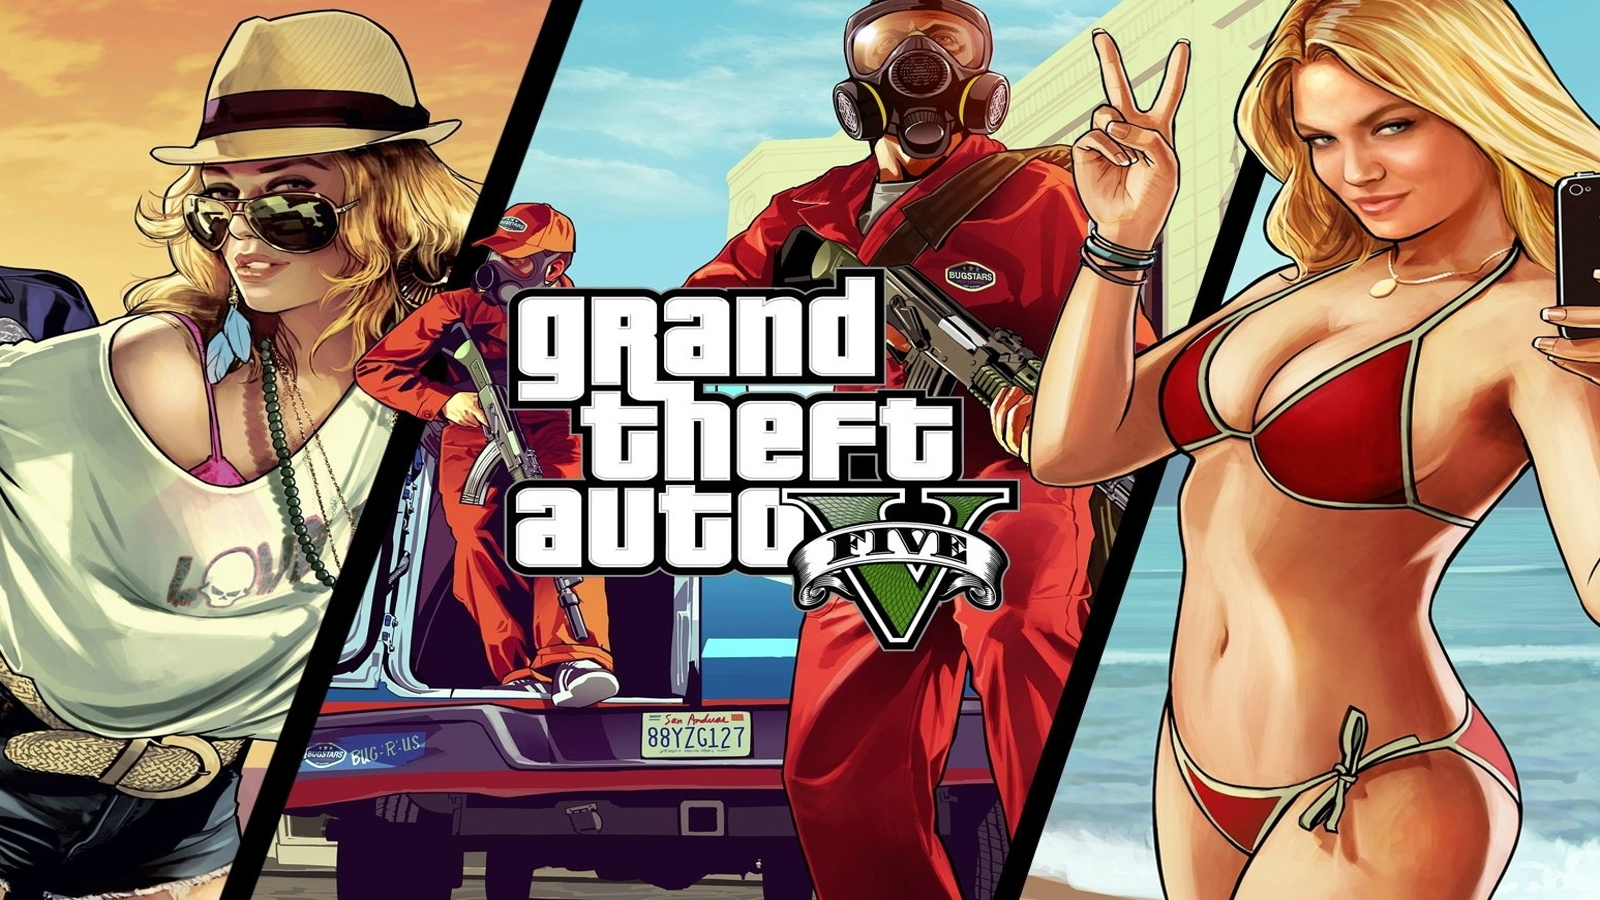 VGX 2013: GTA V é o melhor jogo do ano - veja todos os vencedores - Combo  Infinito